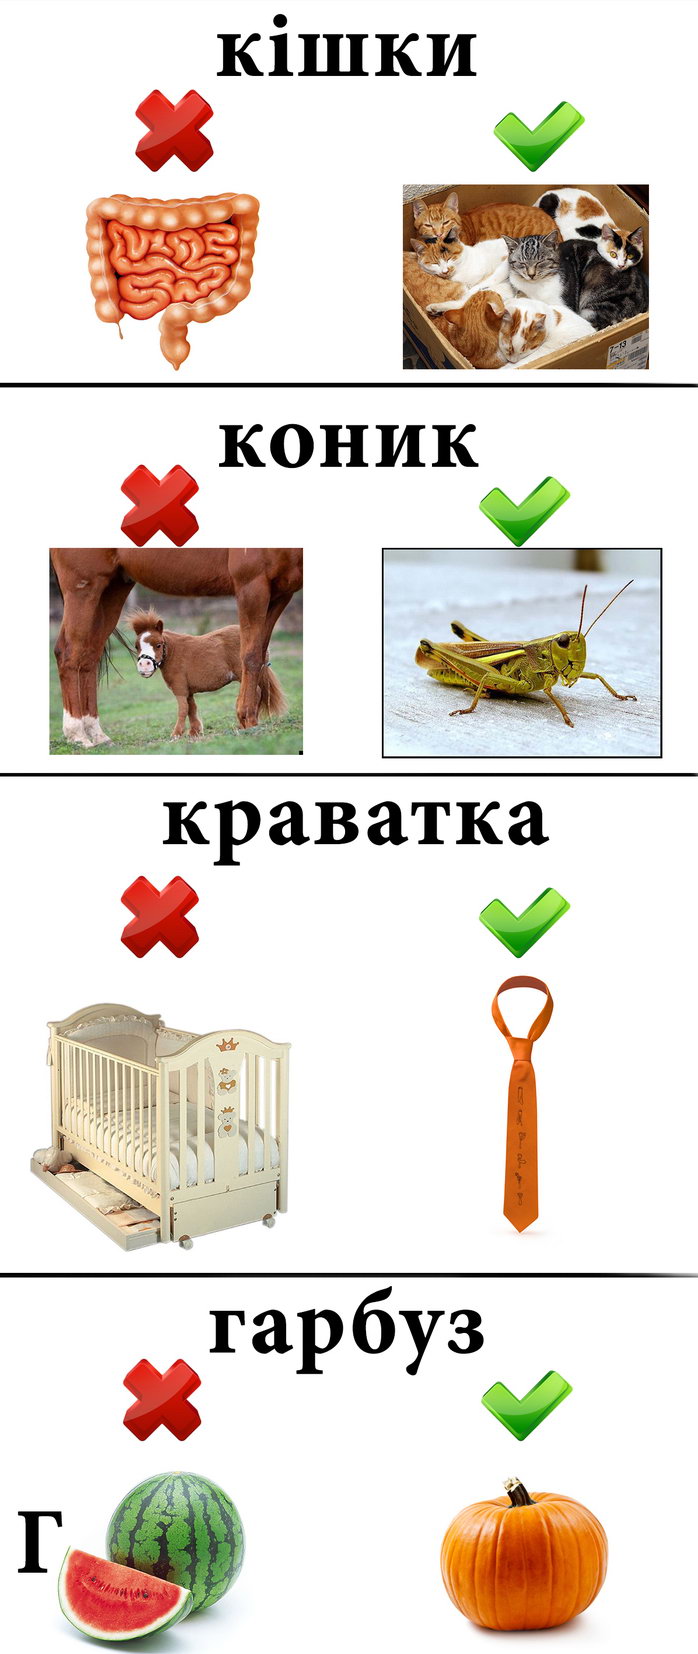 Украинский язык в картинках